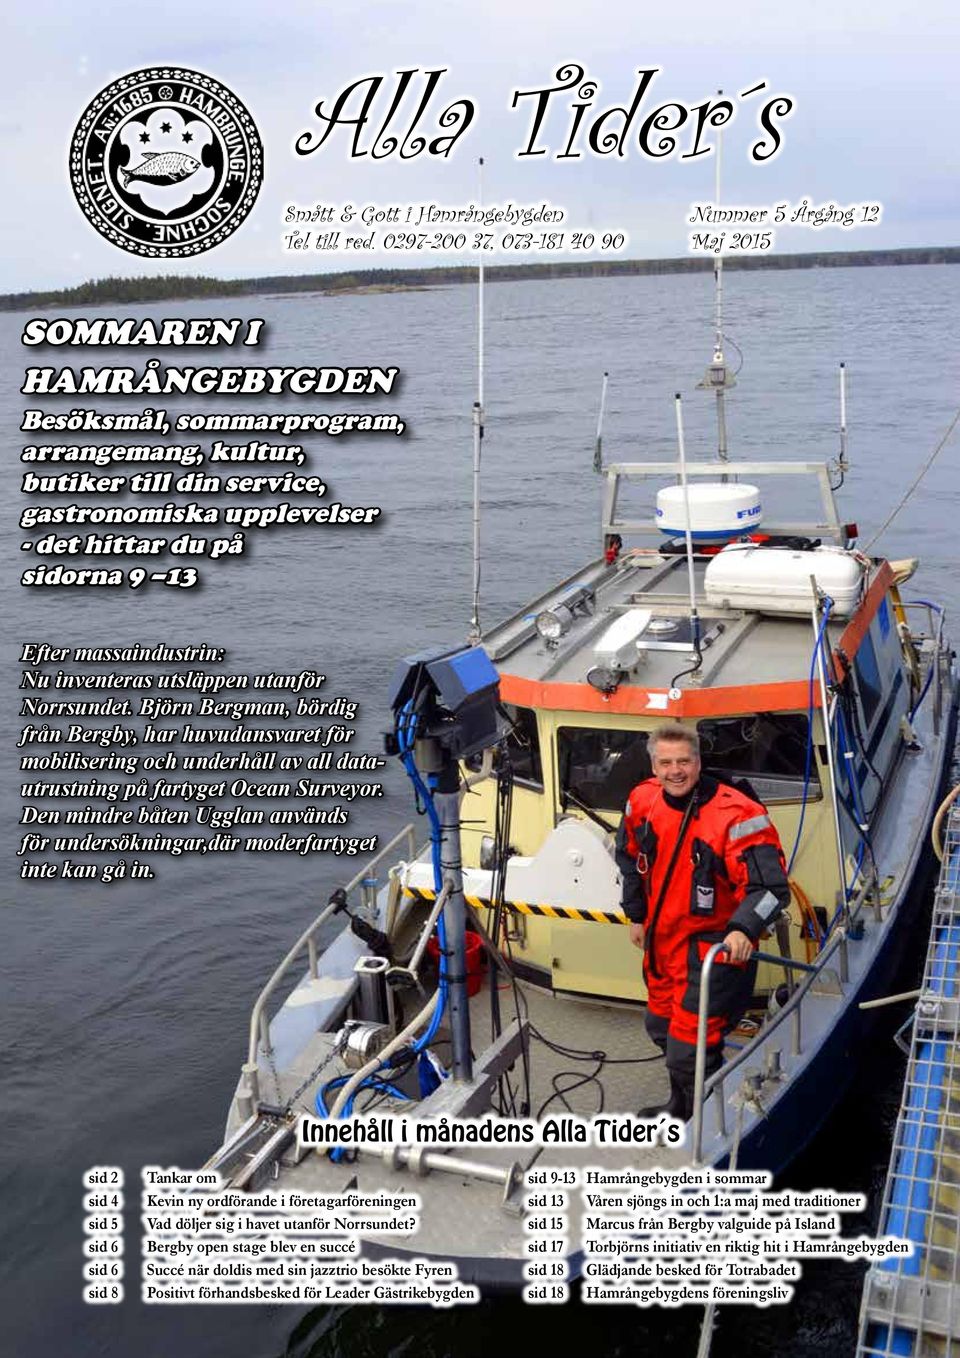 massaindustrin: Nu inventeras utsläppen utanför Norrsundet. Björn Bergman, bördig från Bergby, har huvudansvaret för mobilisering och underhåll av all datautrustning på fartyget Ocean Surveyor.